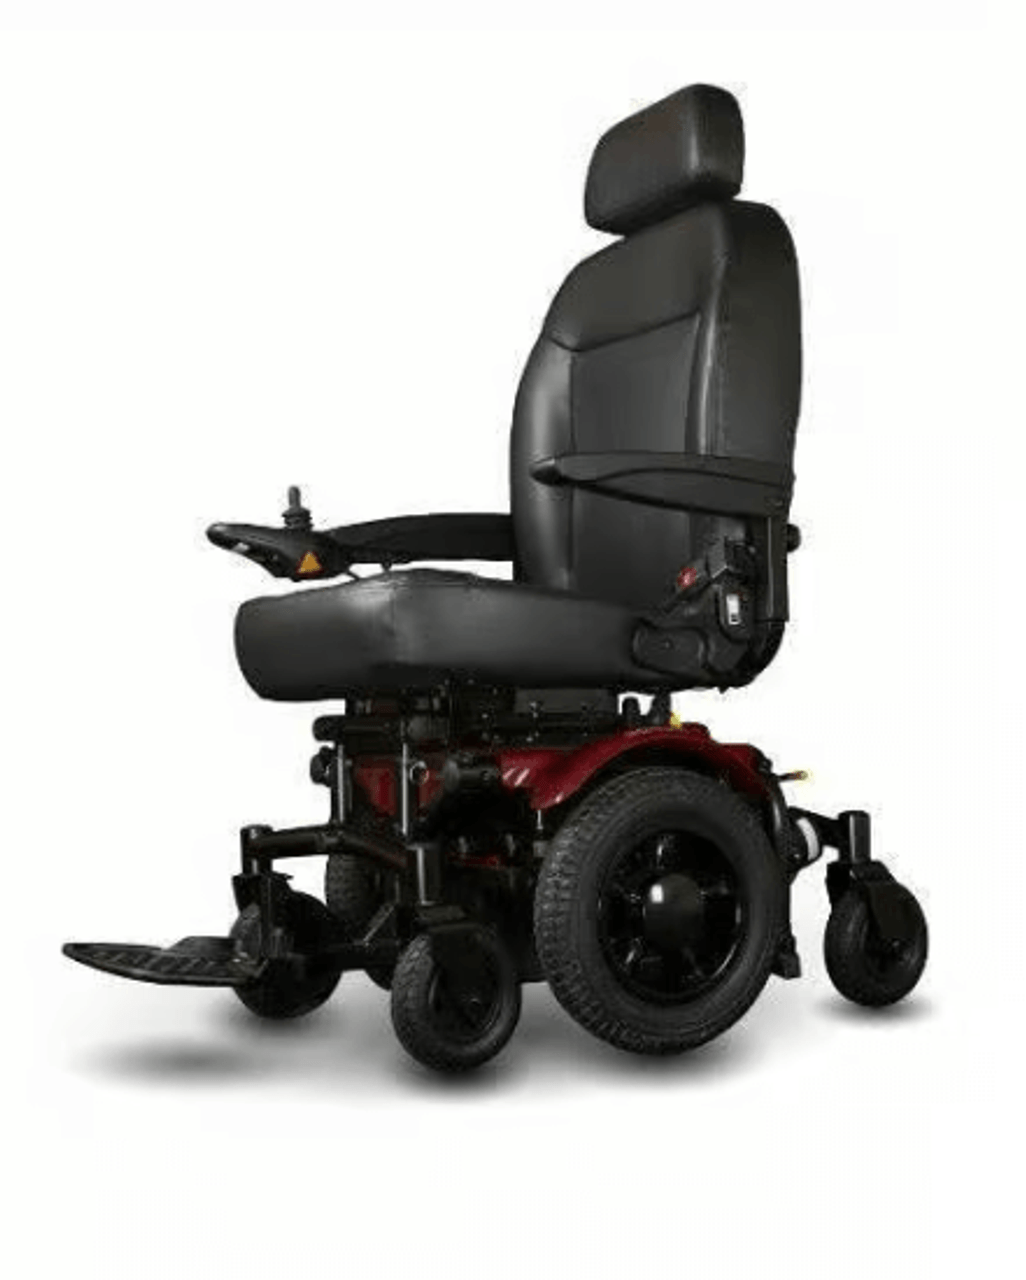 SHOPRIDER 6Runner 14 Heavy-Duty Electric Wheelchair - Mid-Wheel Drive-Chicken Pieces